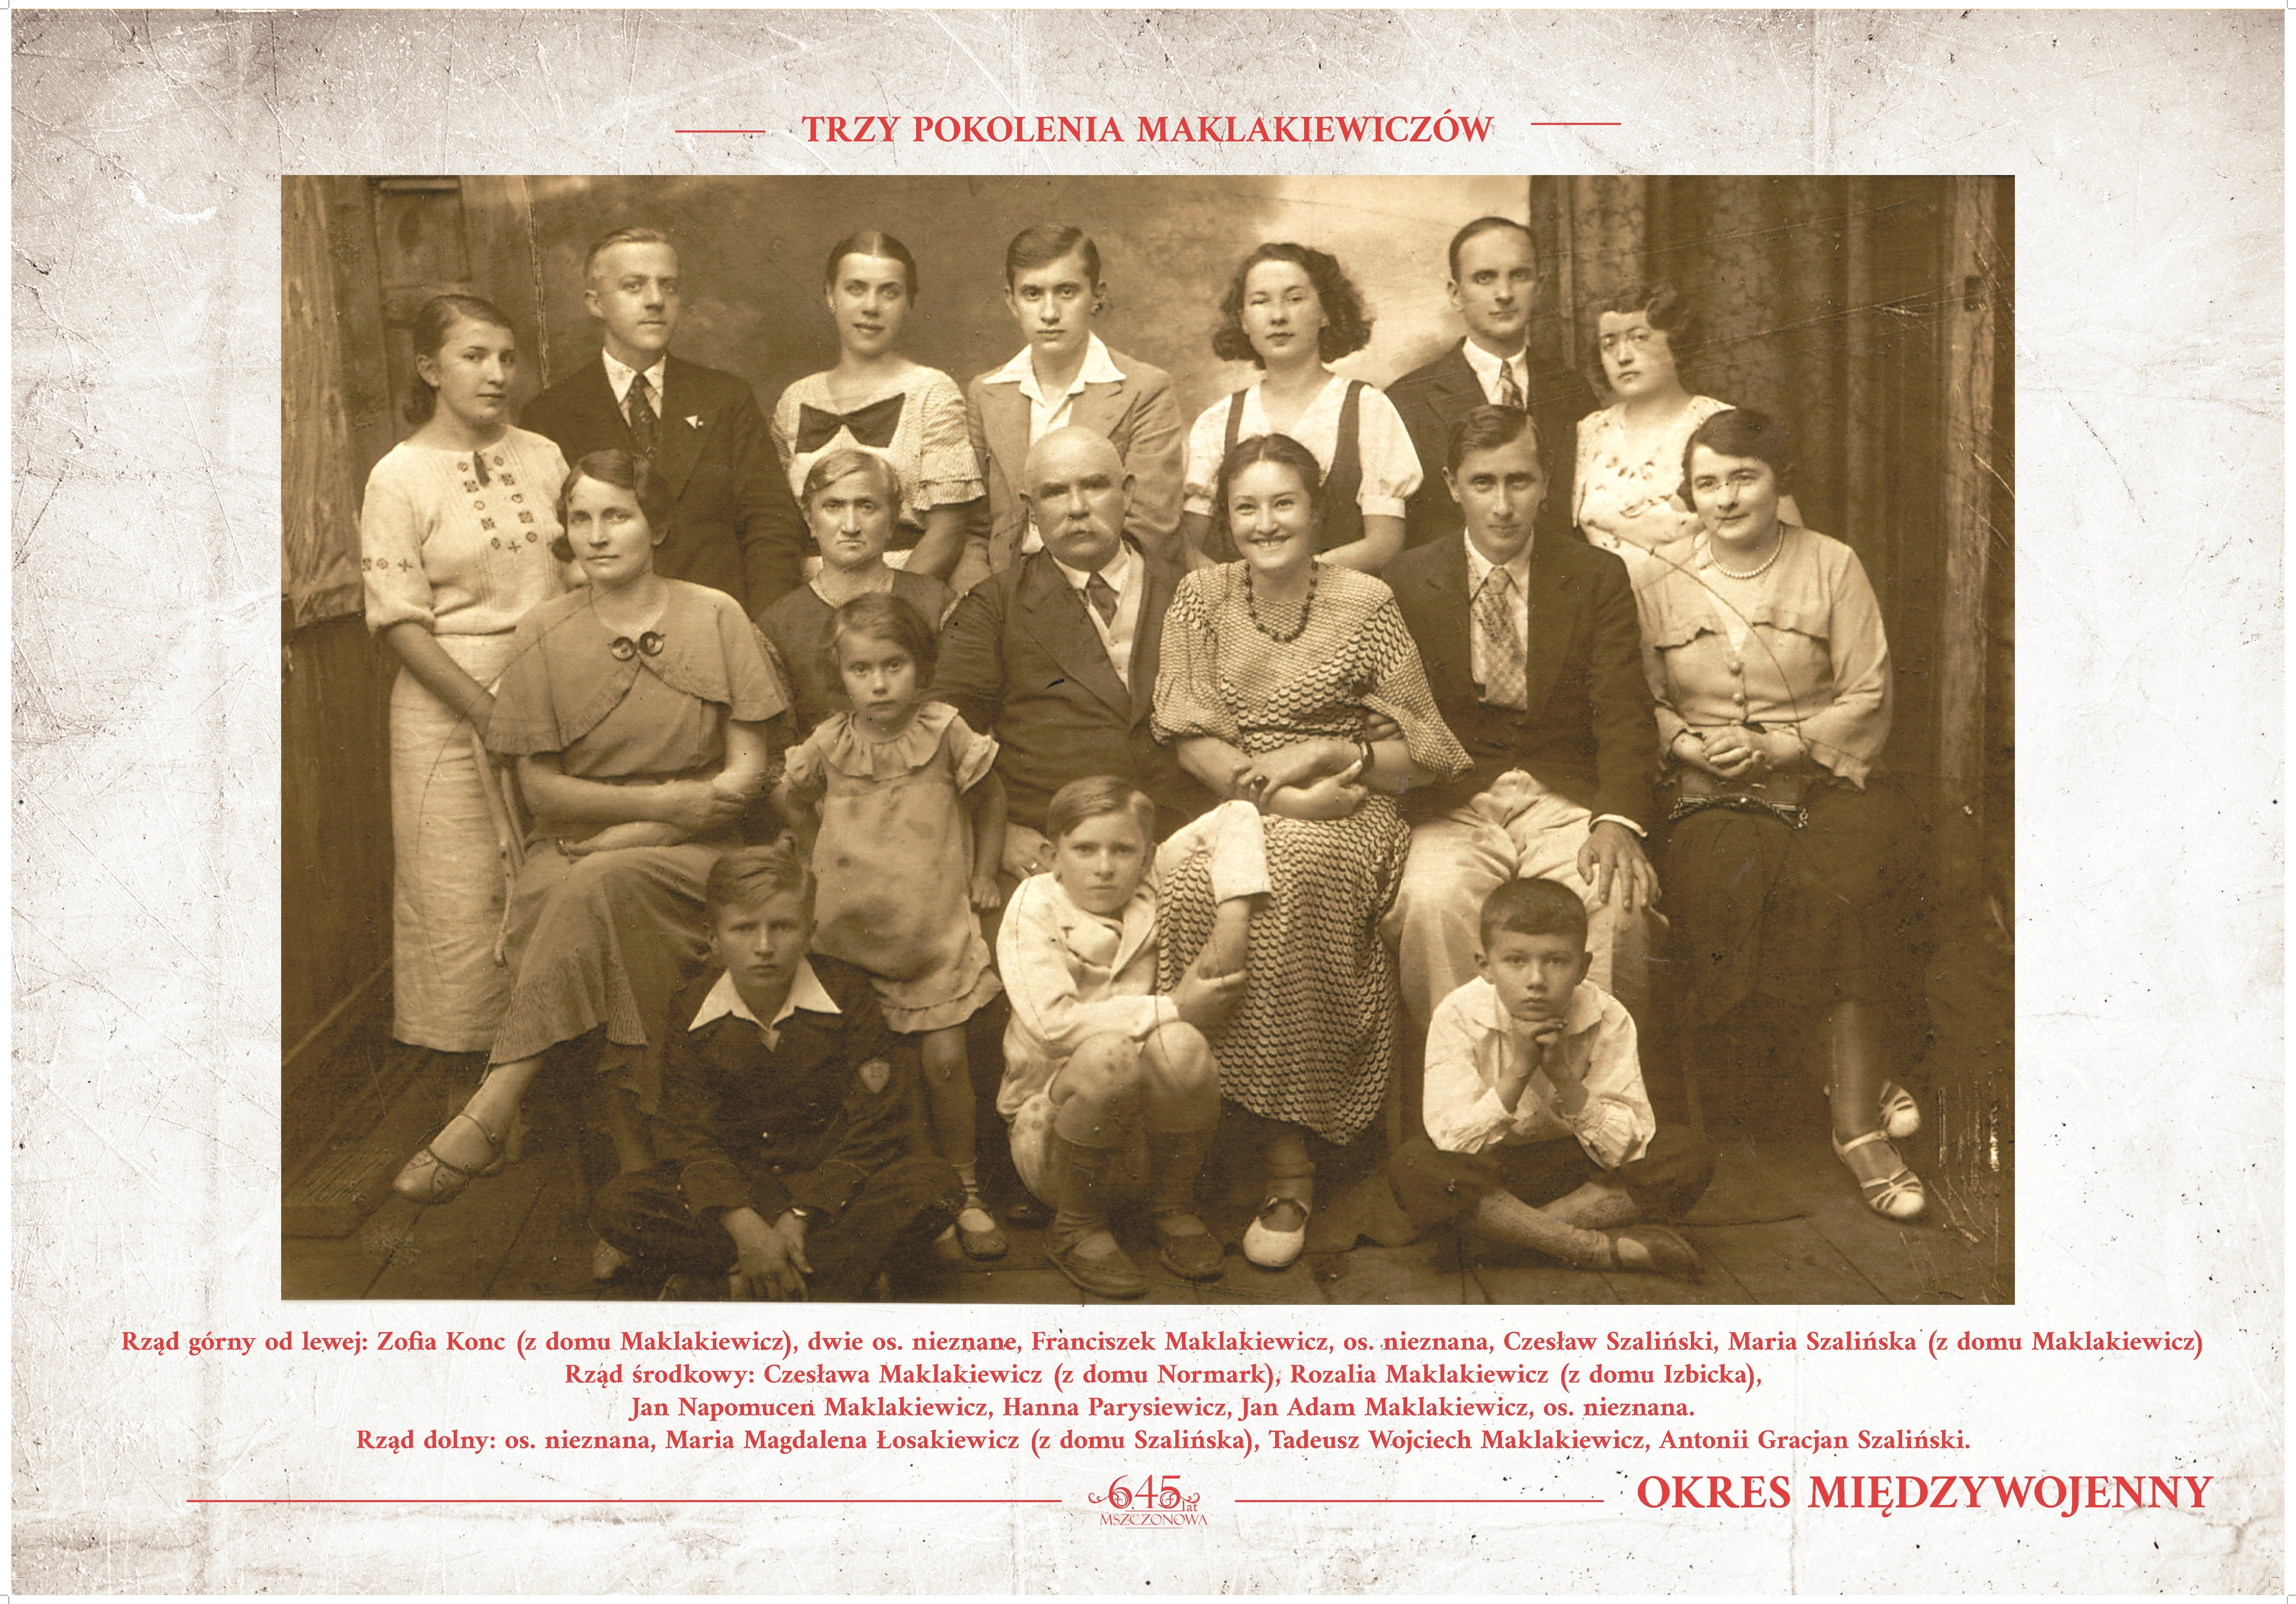 Trzy pokolenia Maklakiewiczów - zdjęcie grupowe